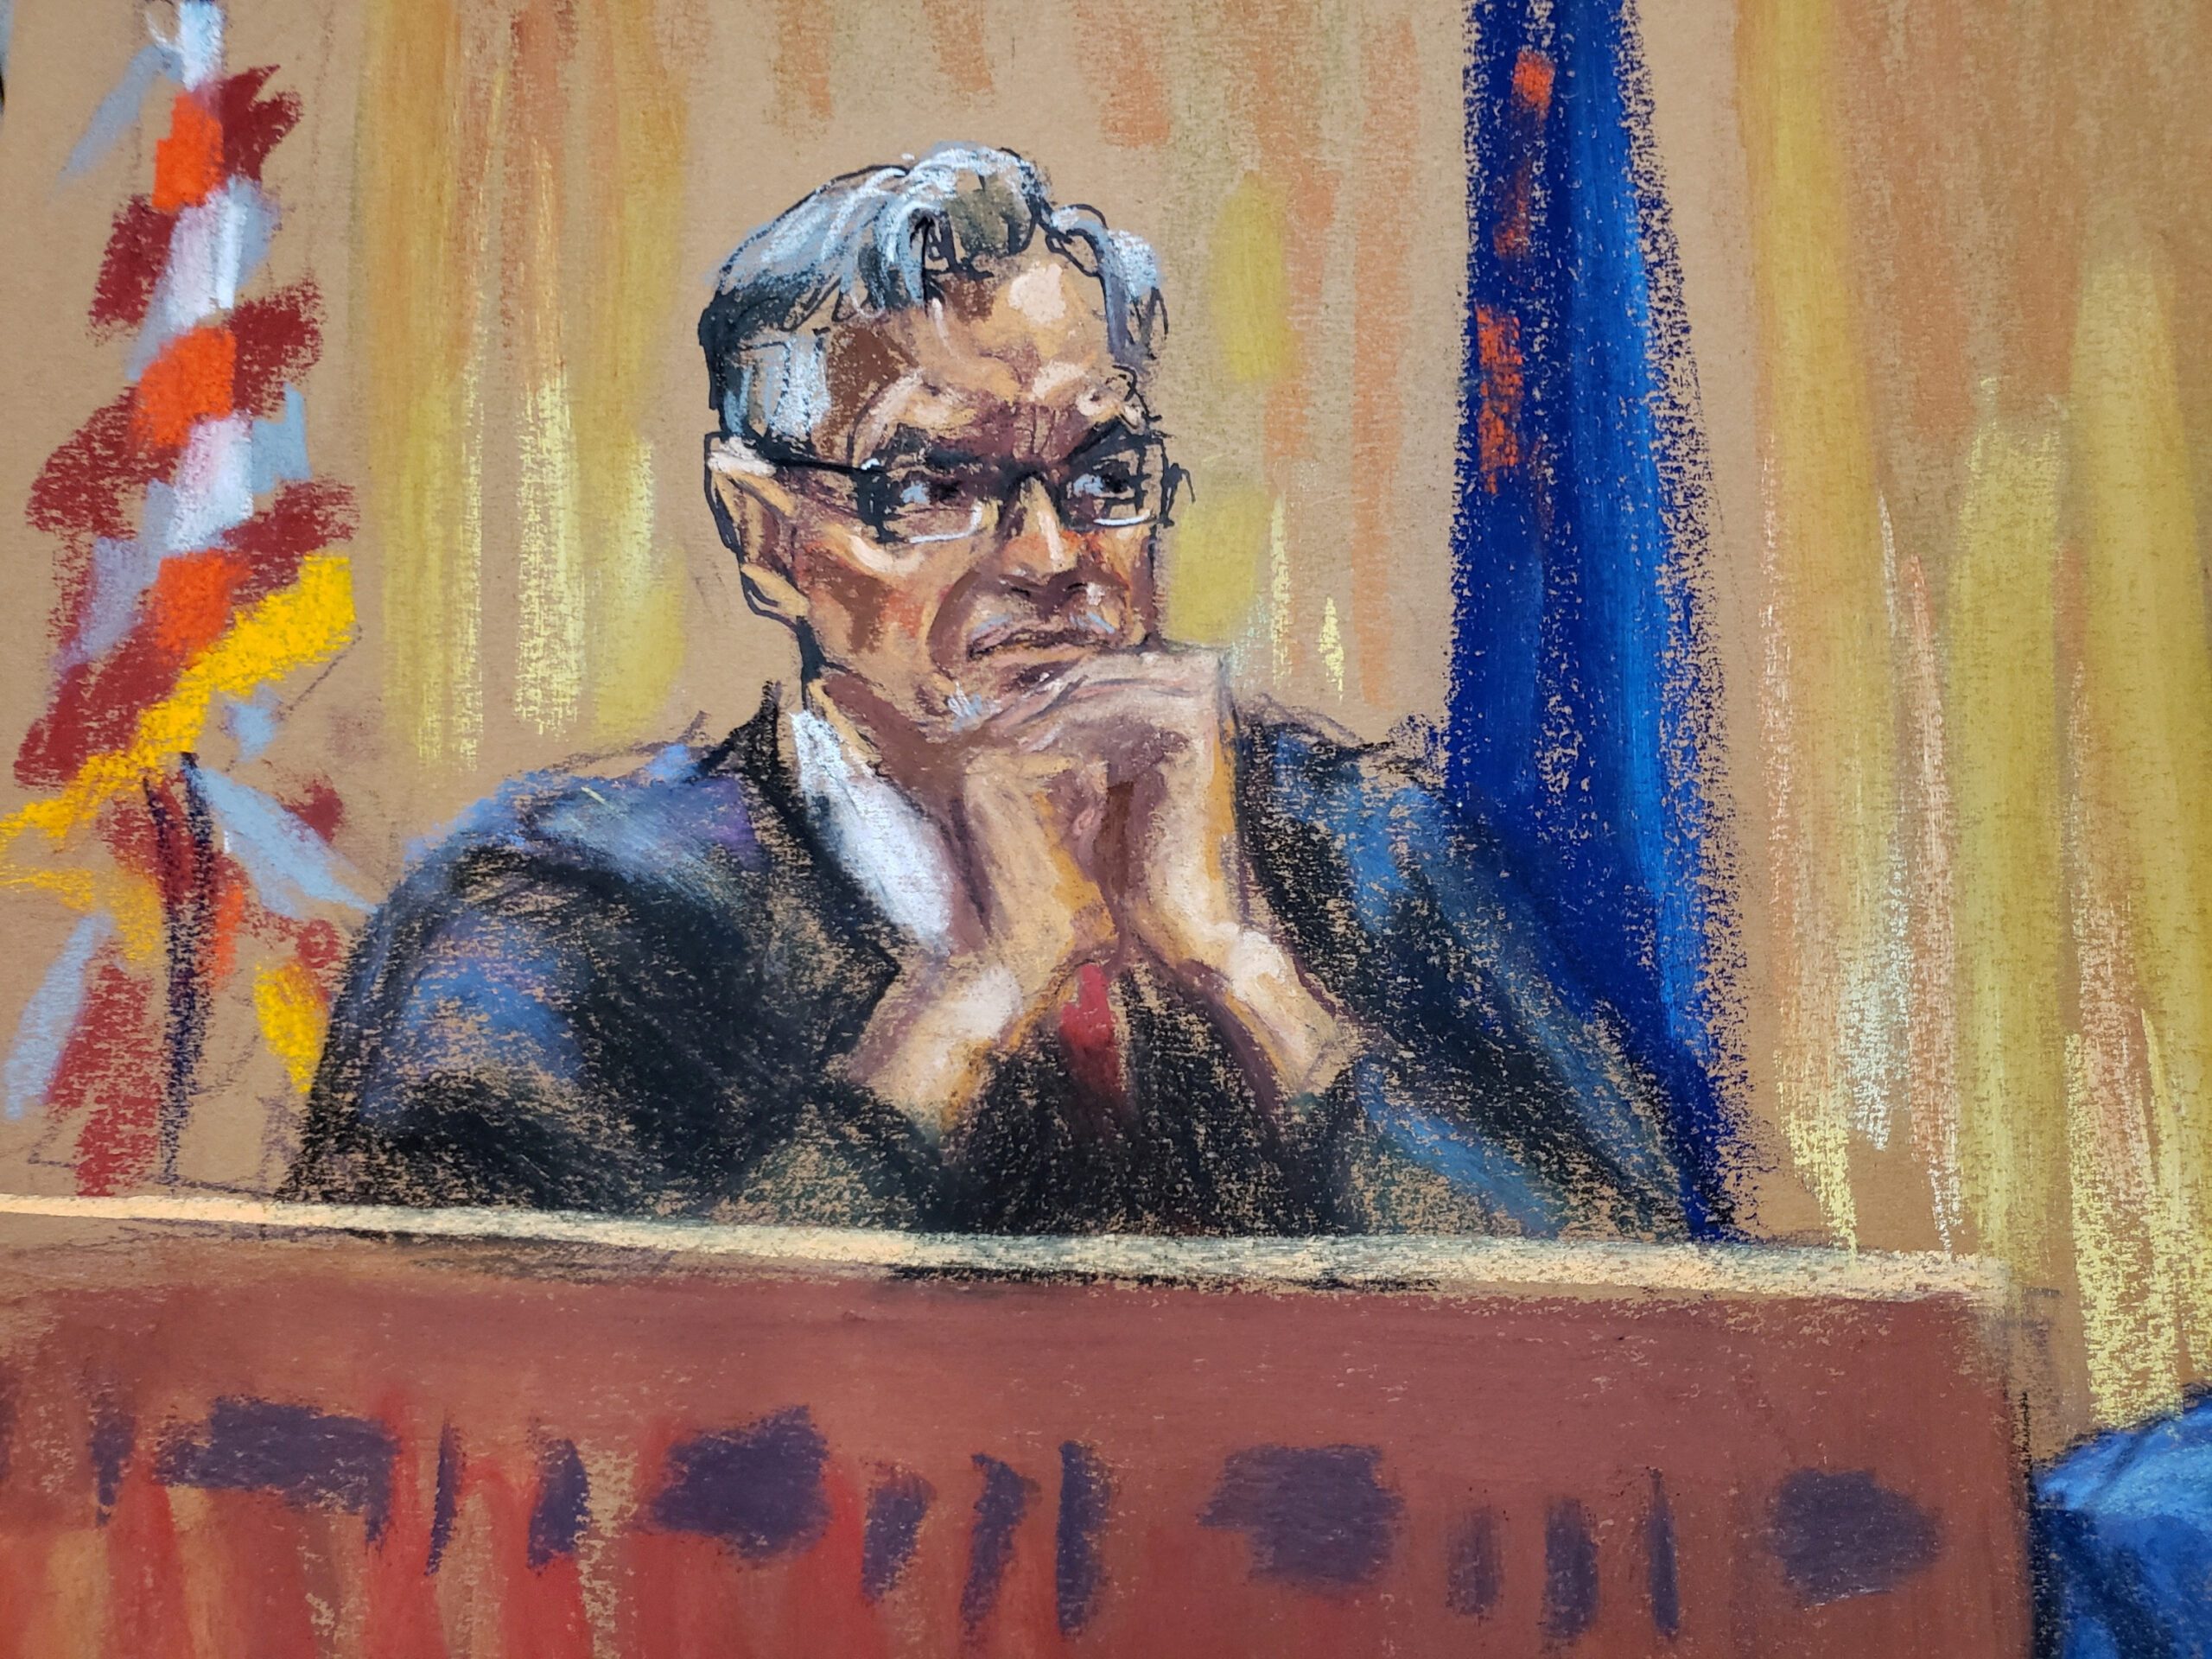 Meet Juan Merchan, the judge presiding over Trump’s criminal case